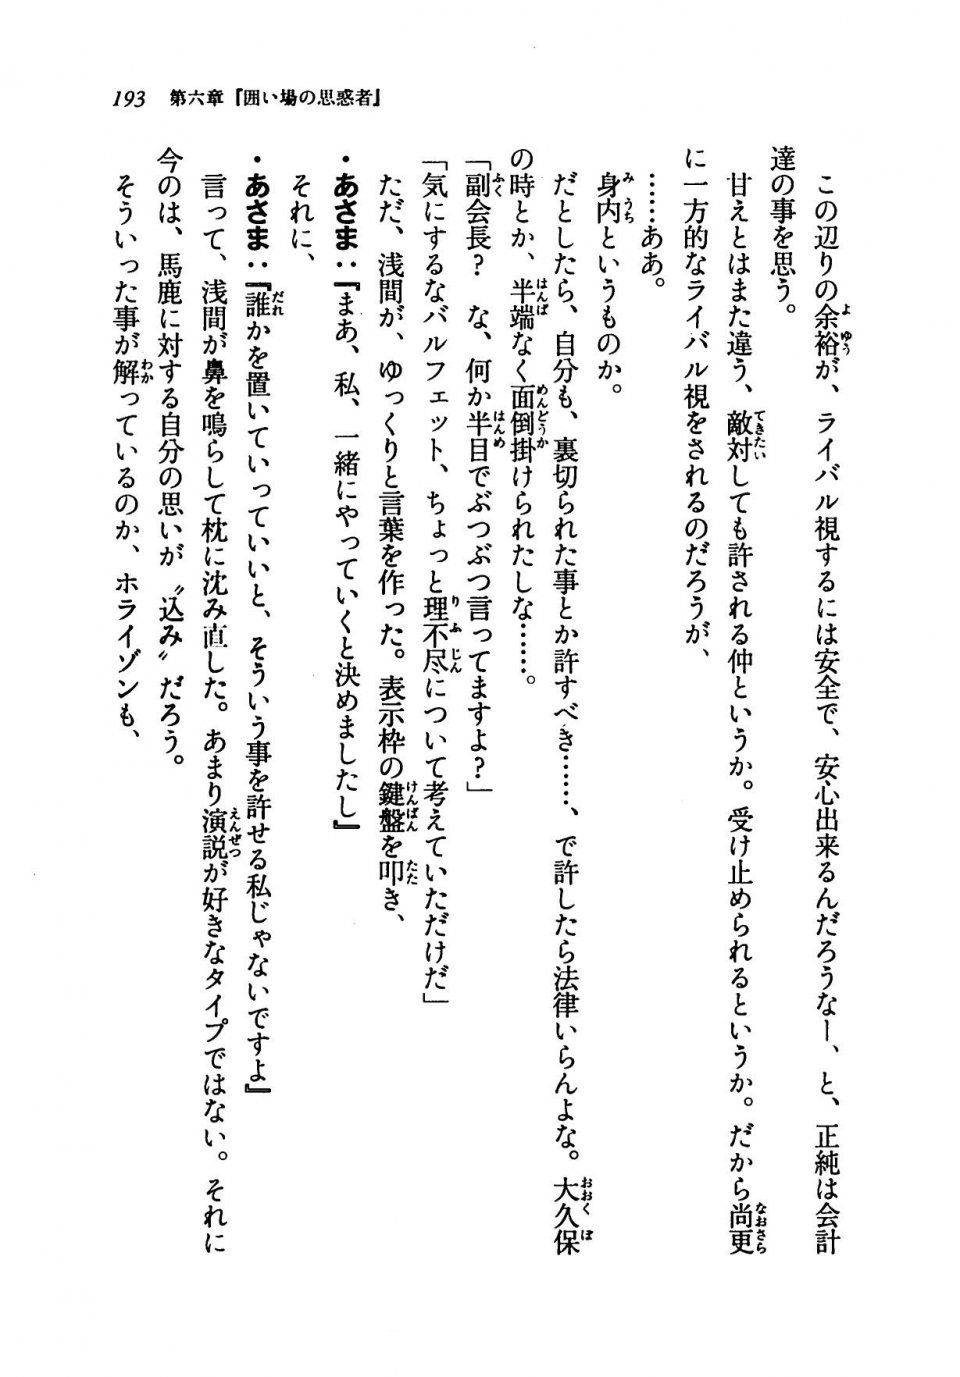 Kyoukai Senjou no Horizon LN Vol 19(8A) - Photo #193